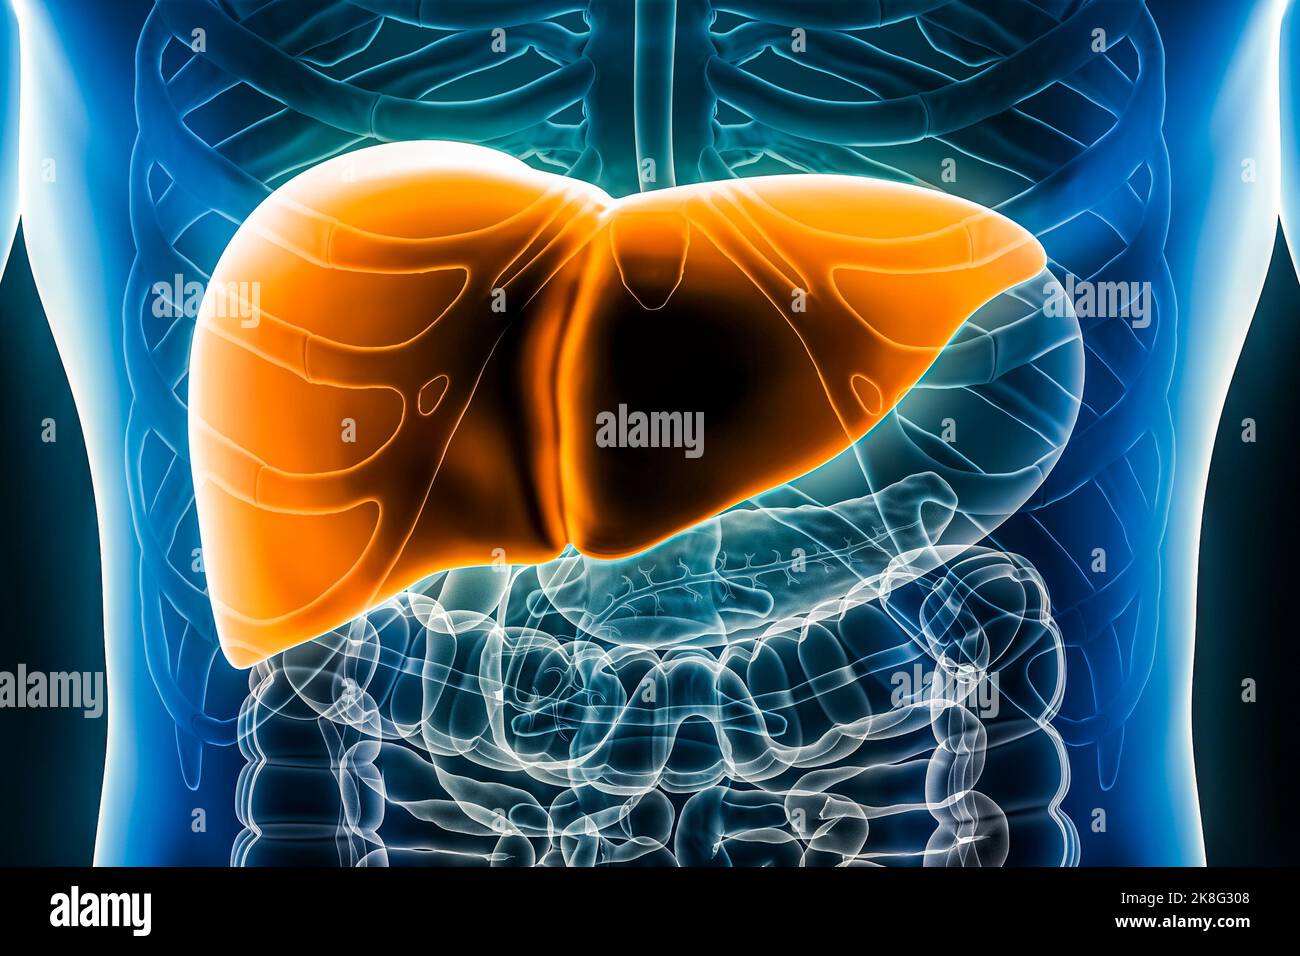 Ilustración de representación 3D del hígado Primer plano anterior o vista frontal. Órgano del aparato digestivo humano. Anatomía, medicina, biología, ciencia, salud c Foto de stock